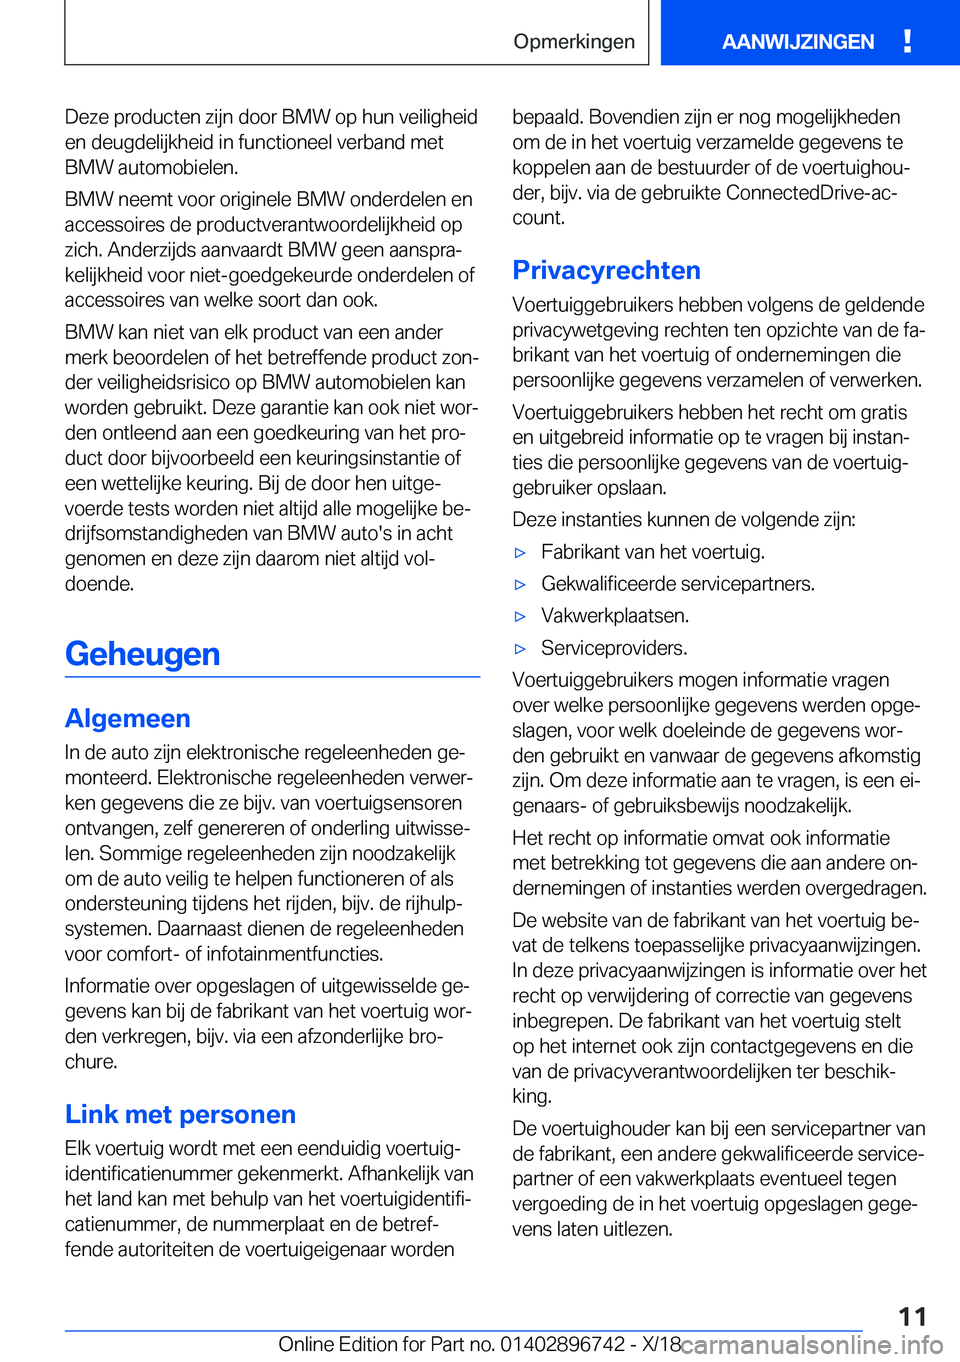 BMW X5 2019  Instructieboekjes (in Dutch) �D�e�z�e��p�r�o�d�u�c�t�e�n��z�i�j�n��d�o�o�r��B�M�W��o�p��h�u�n��v�e�i�l�i�g�h�e�i�d�e�n��d�e�u�g�d�e�l�i�j�k�h�e�i�d��i�n��f�u�n�c�t�i�o�n�e�e�l��v�e�r�b�a�n�d��m�e�t�B�M�W��a�u�t�o�m�o